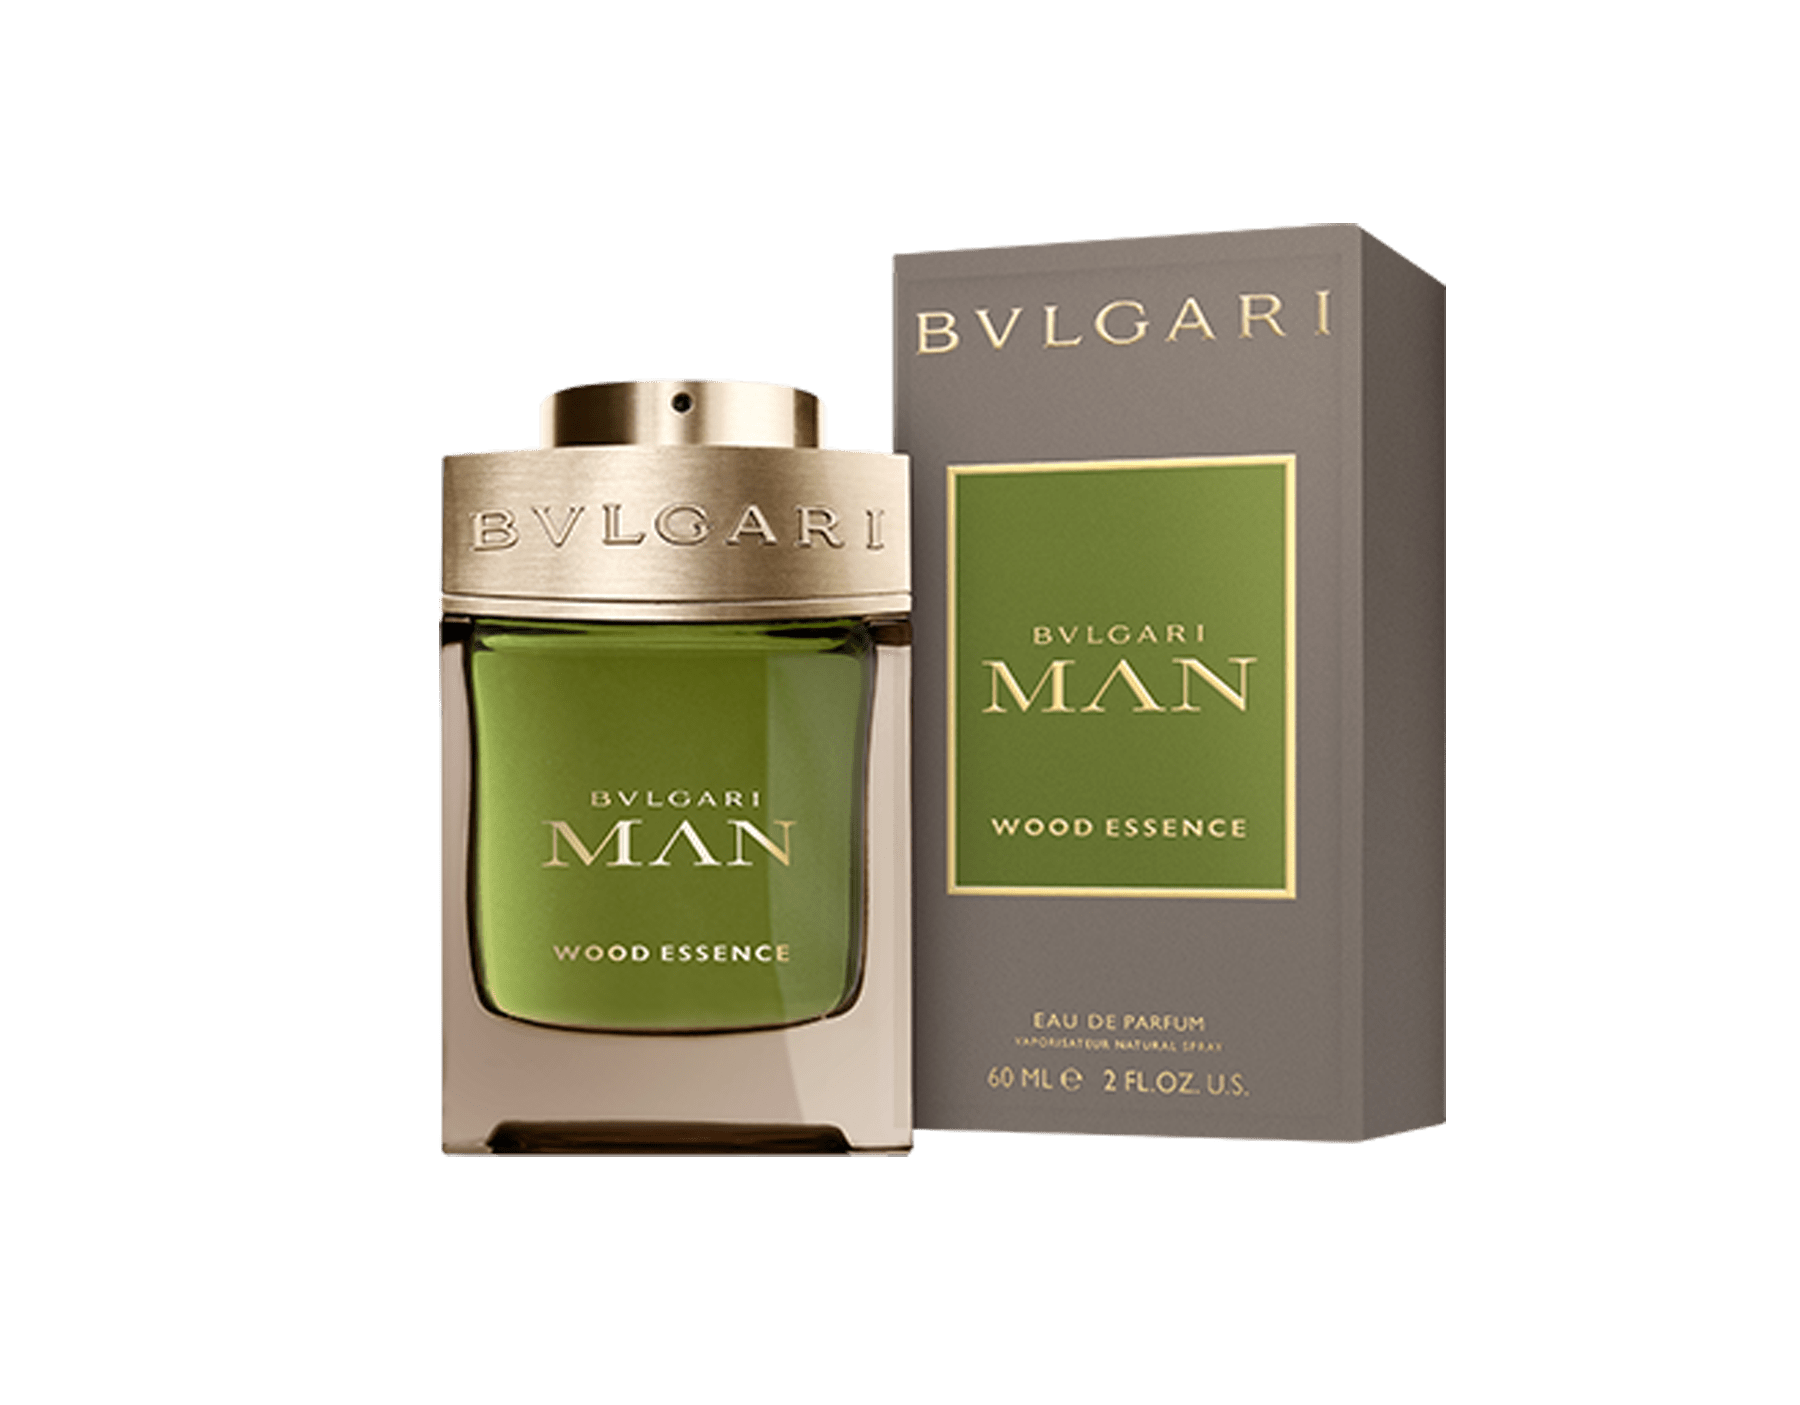 bvlgari parfüm man